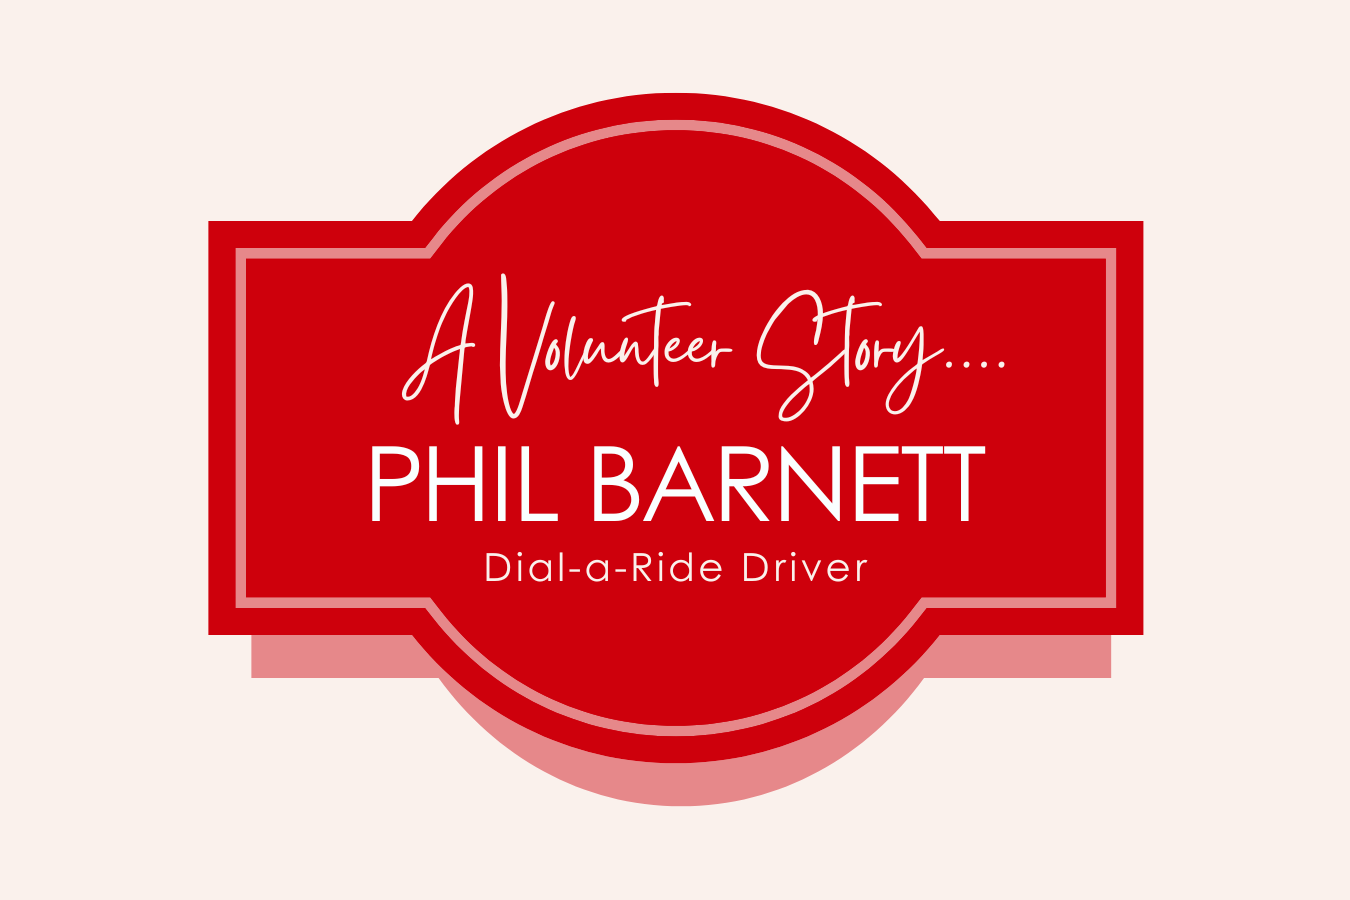 Phil Barnett's Dial-Ride volunteering story